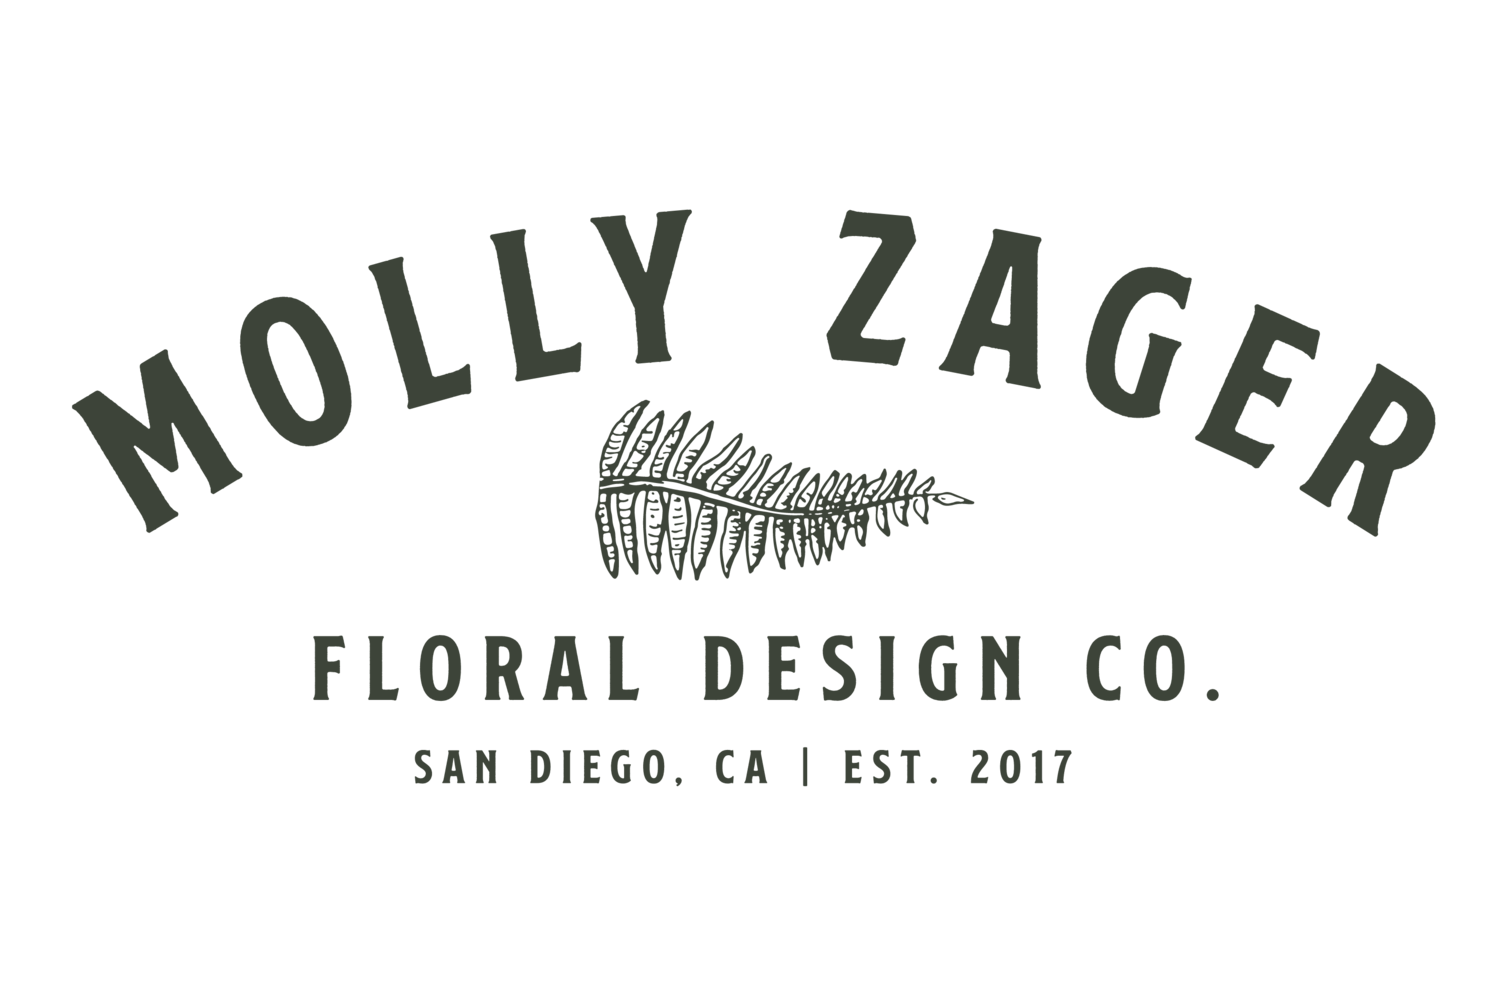 Encinitas Florist | Molly Zager Floral Design Co.